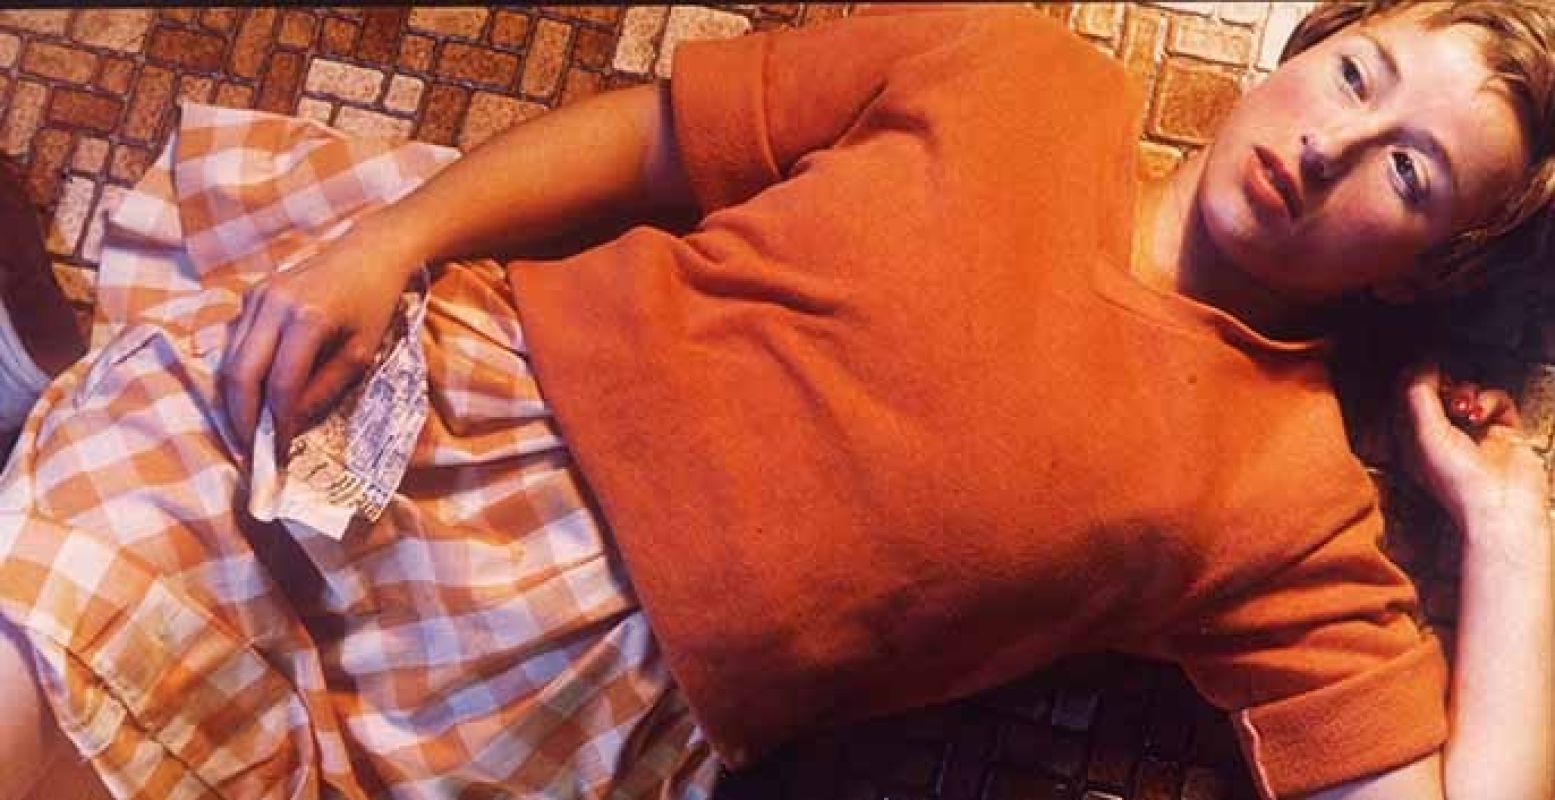 Cindy Sherman, Untitled (no 96 - orange shirt, tile floor), 1982. C-print. Collectie: Museum Boijmans van Beuningen